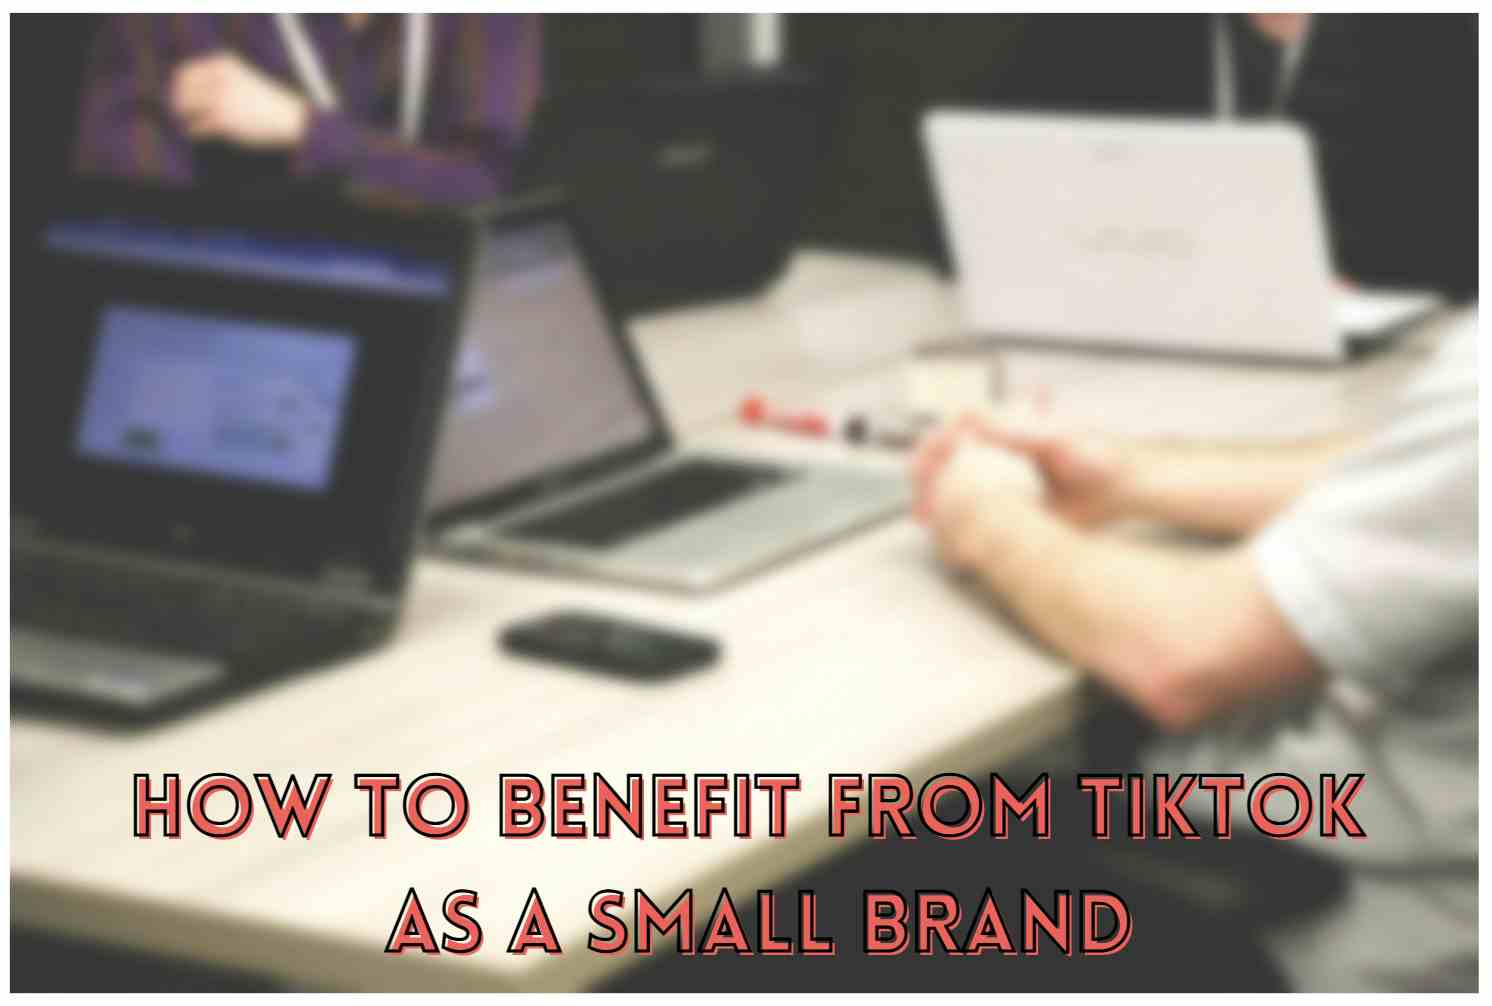 Küçük bir marka olarak TikTok'tan nasıl yararlanılır?